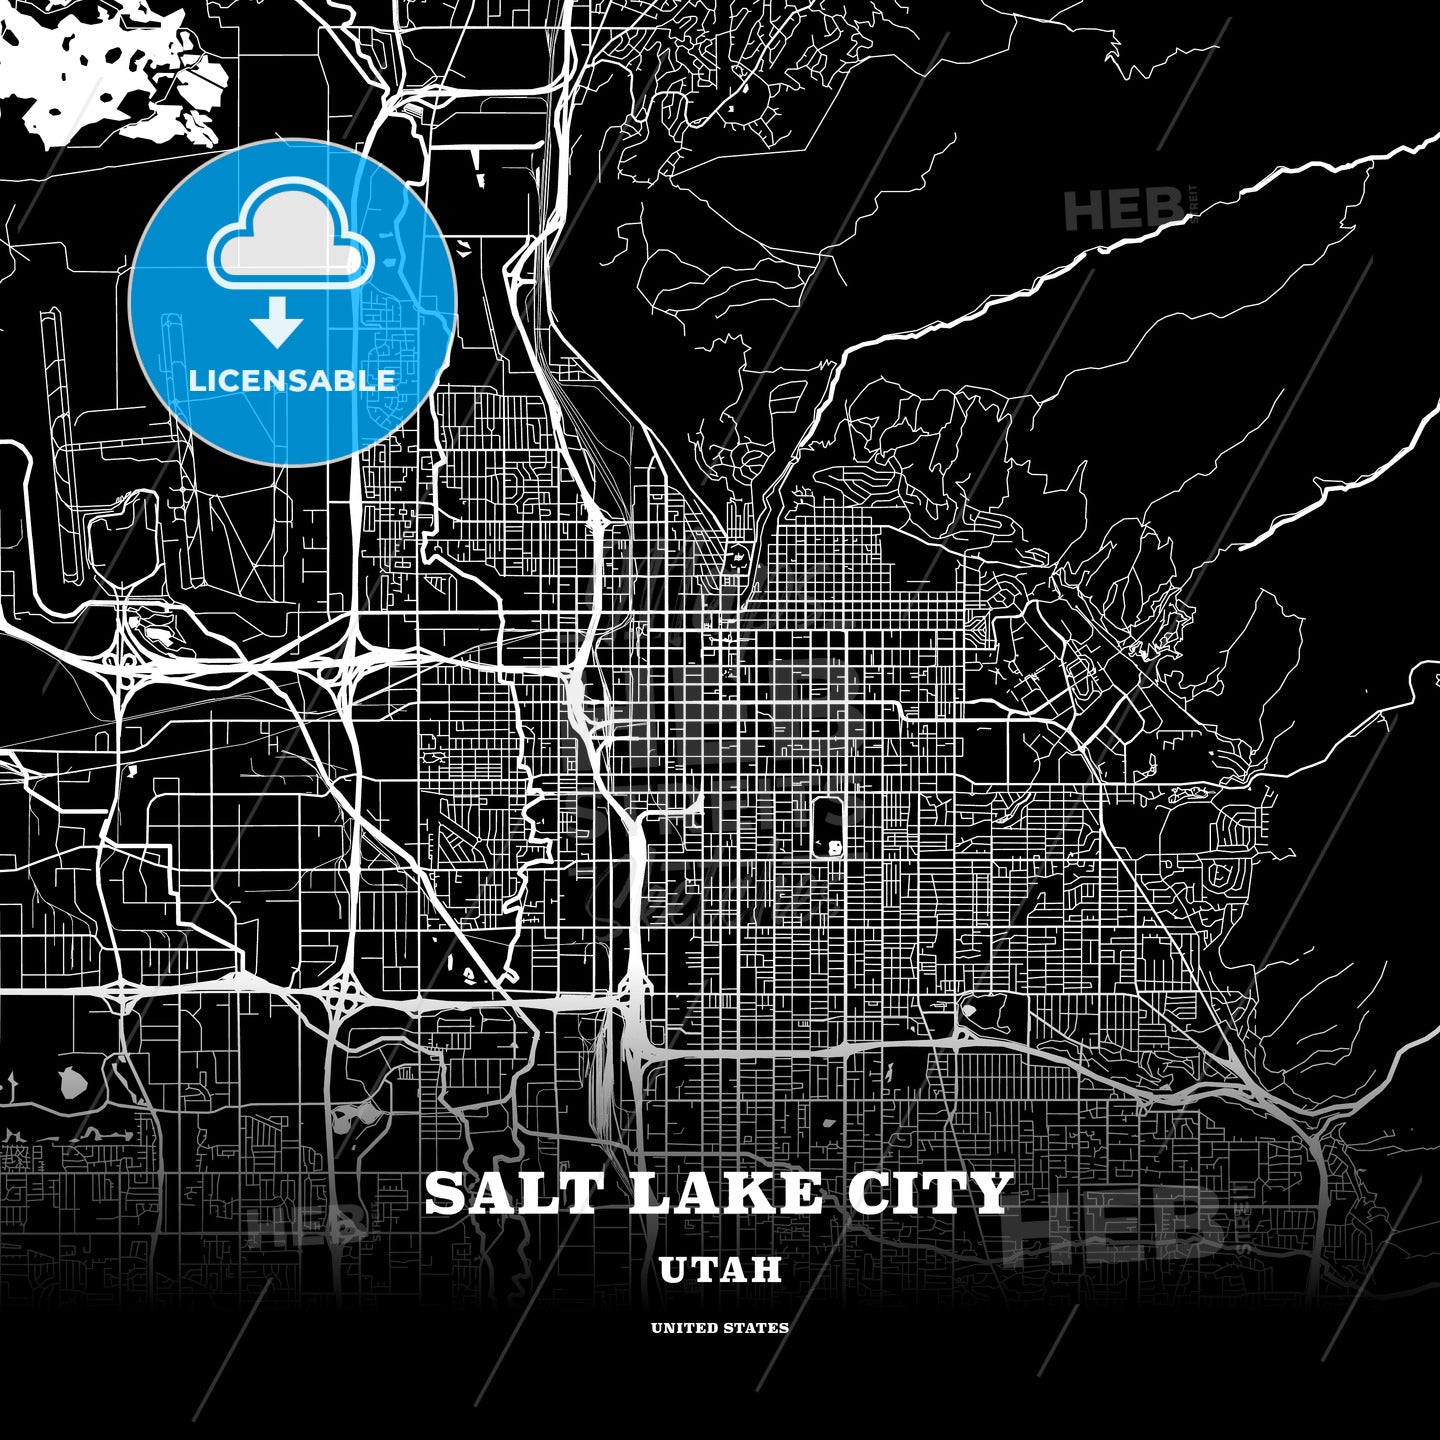 Salt Lake City, Utah, USA map